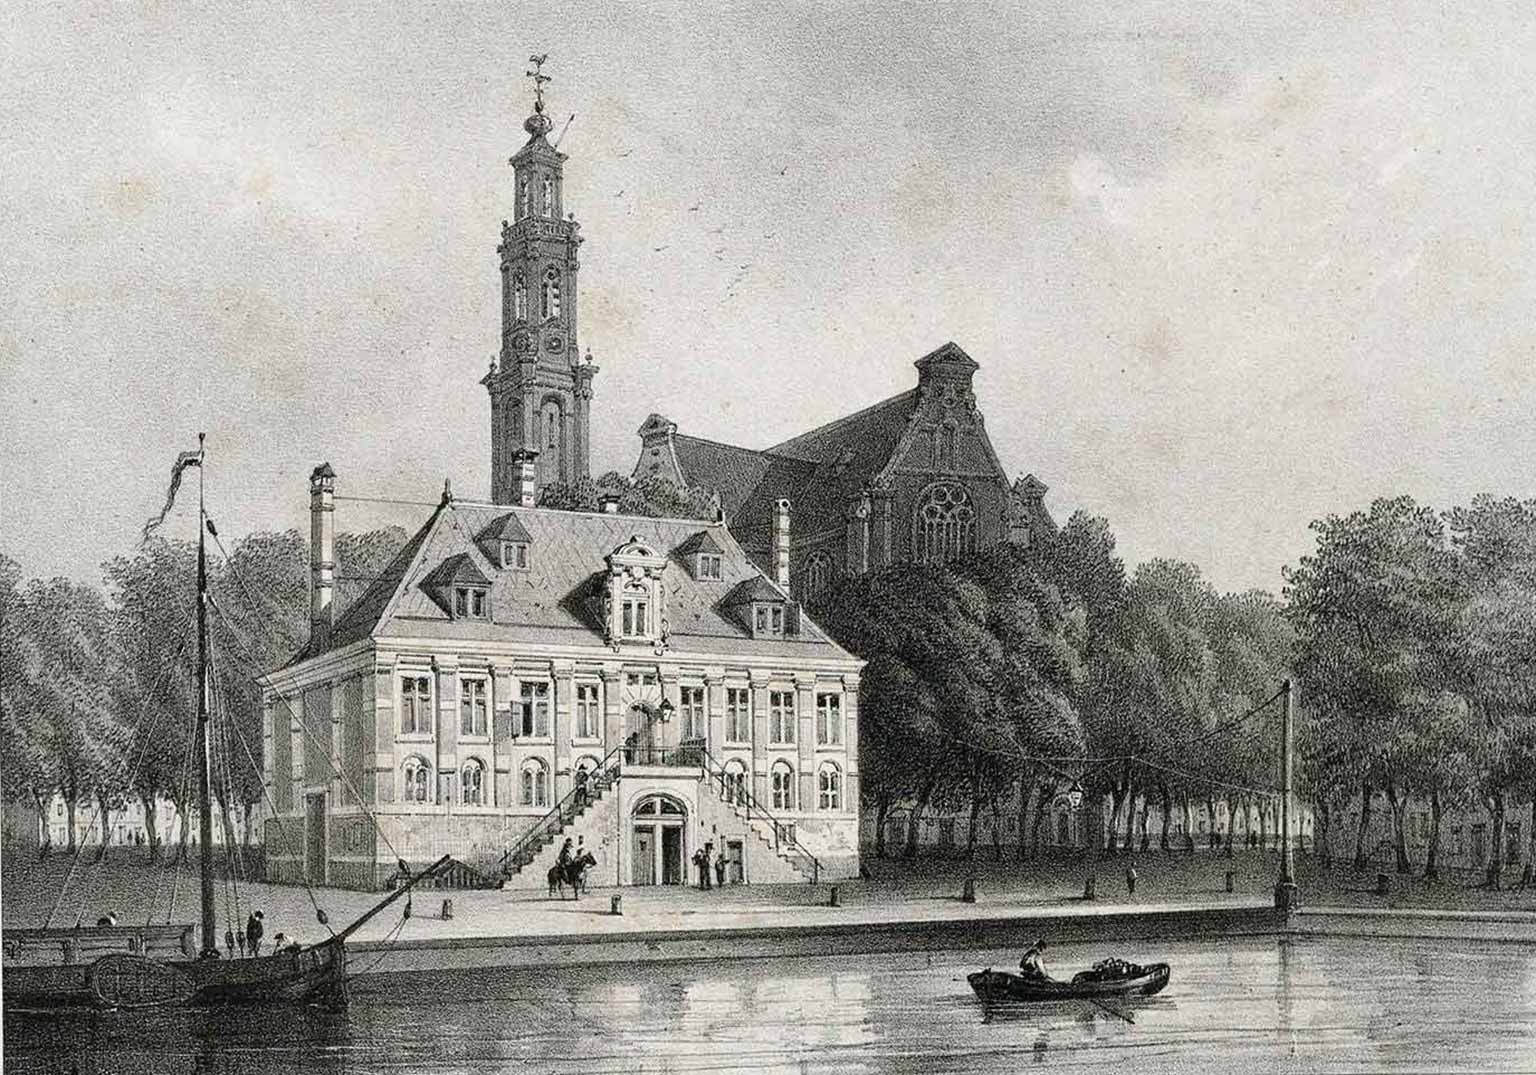 Westerhal on the Westermarkt, Amsterdam, auround 1845